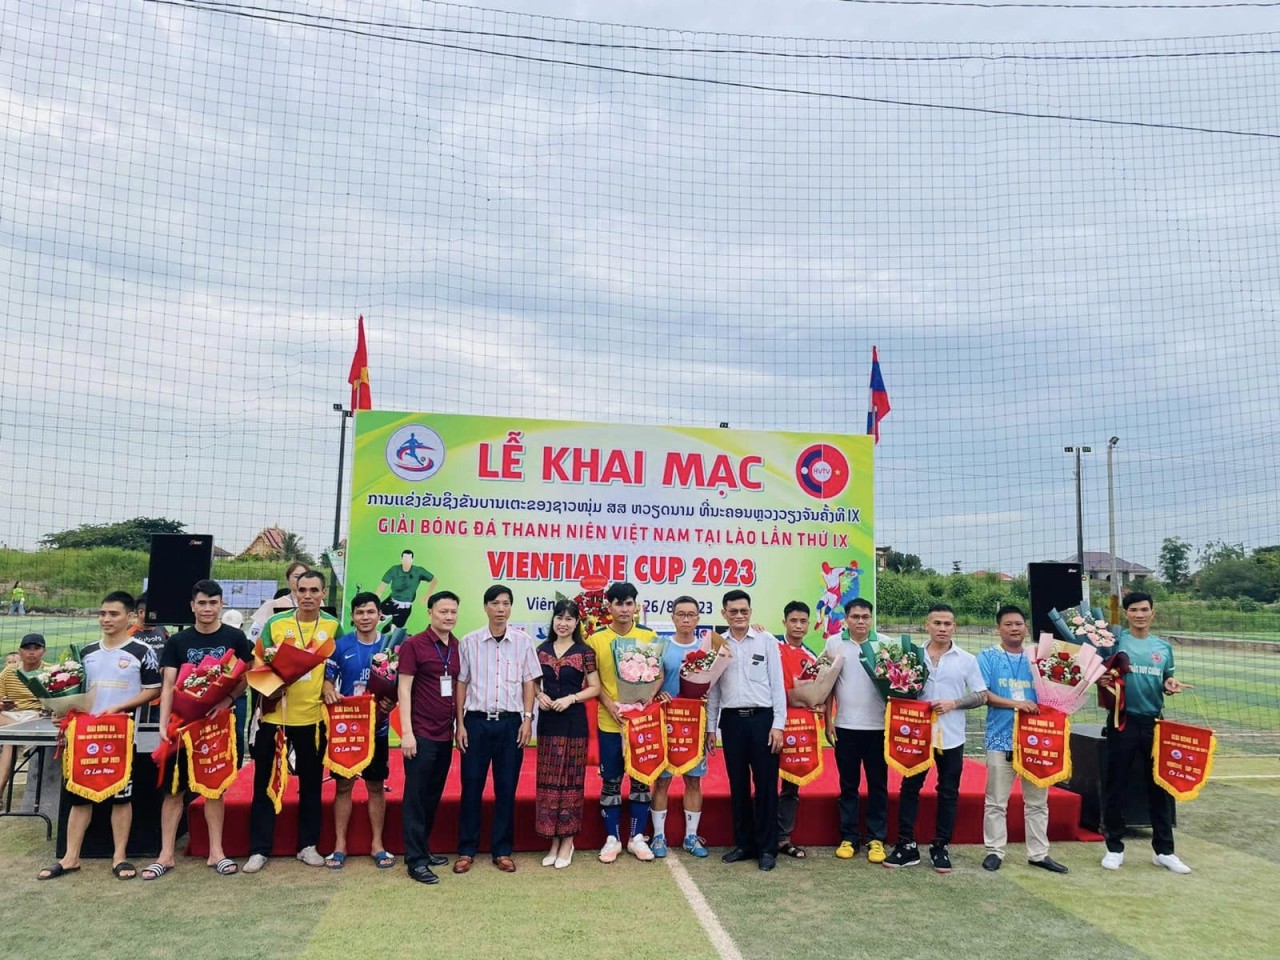 Tưng bừng giải cầu lông, bóng đá của người Việt tại Lào